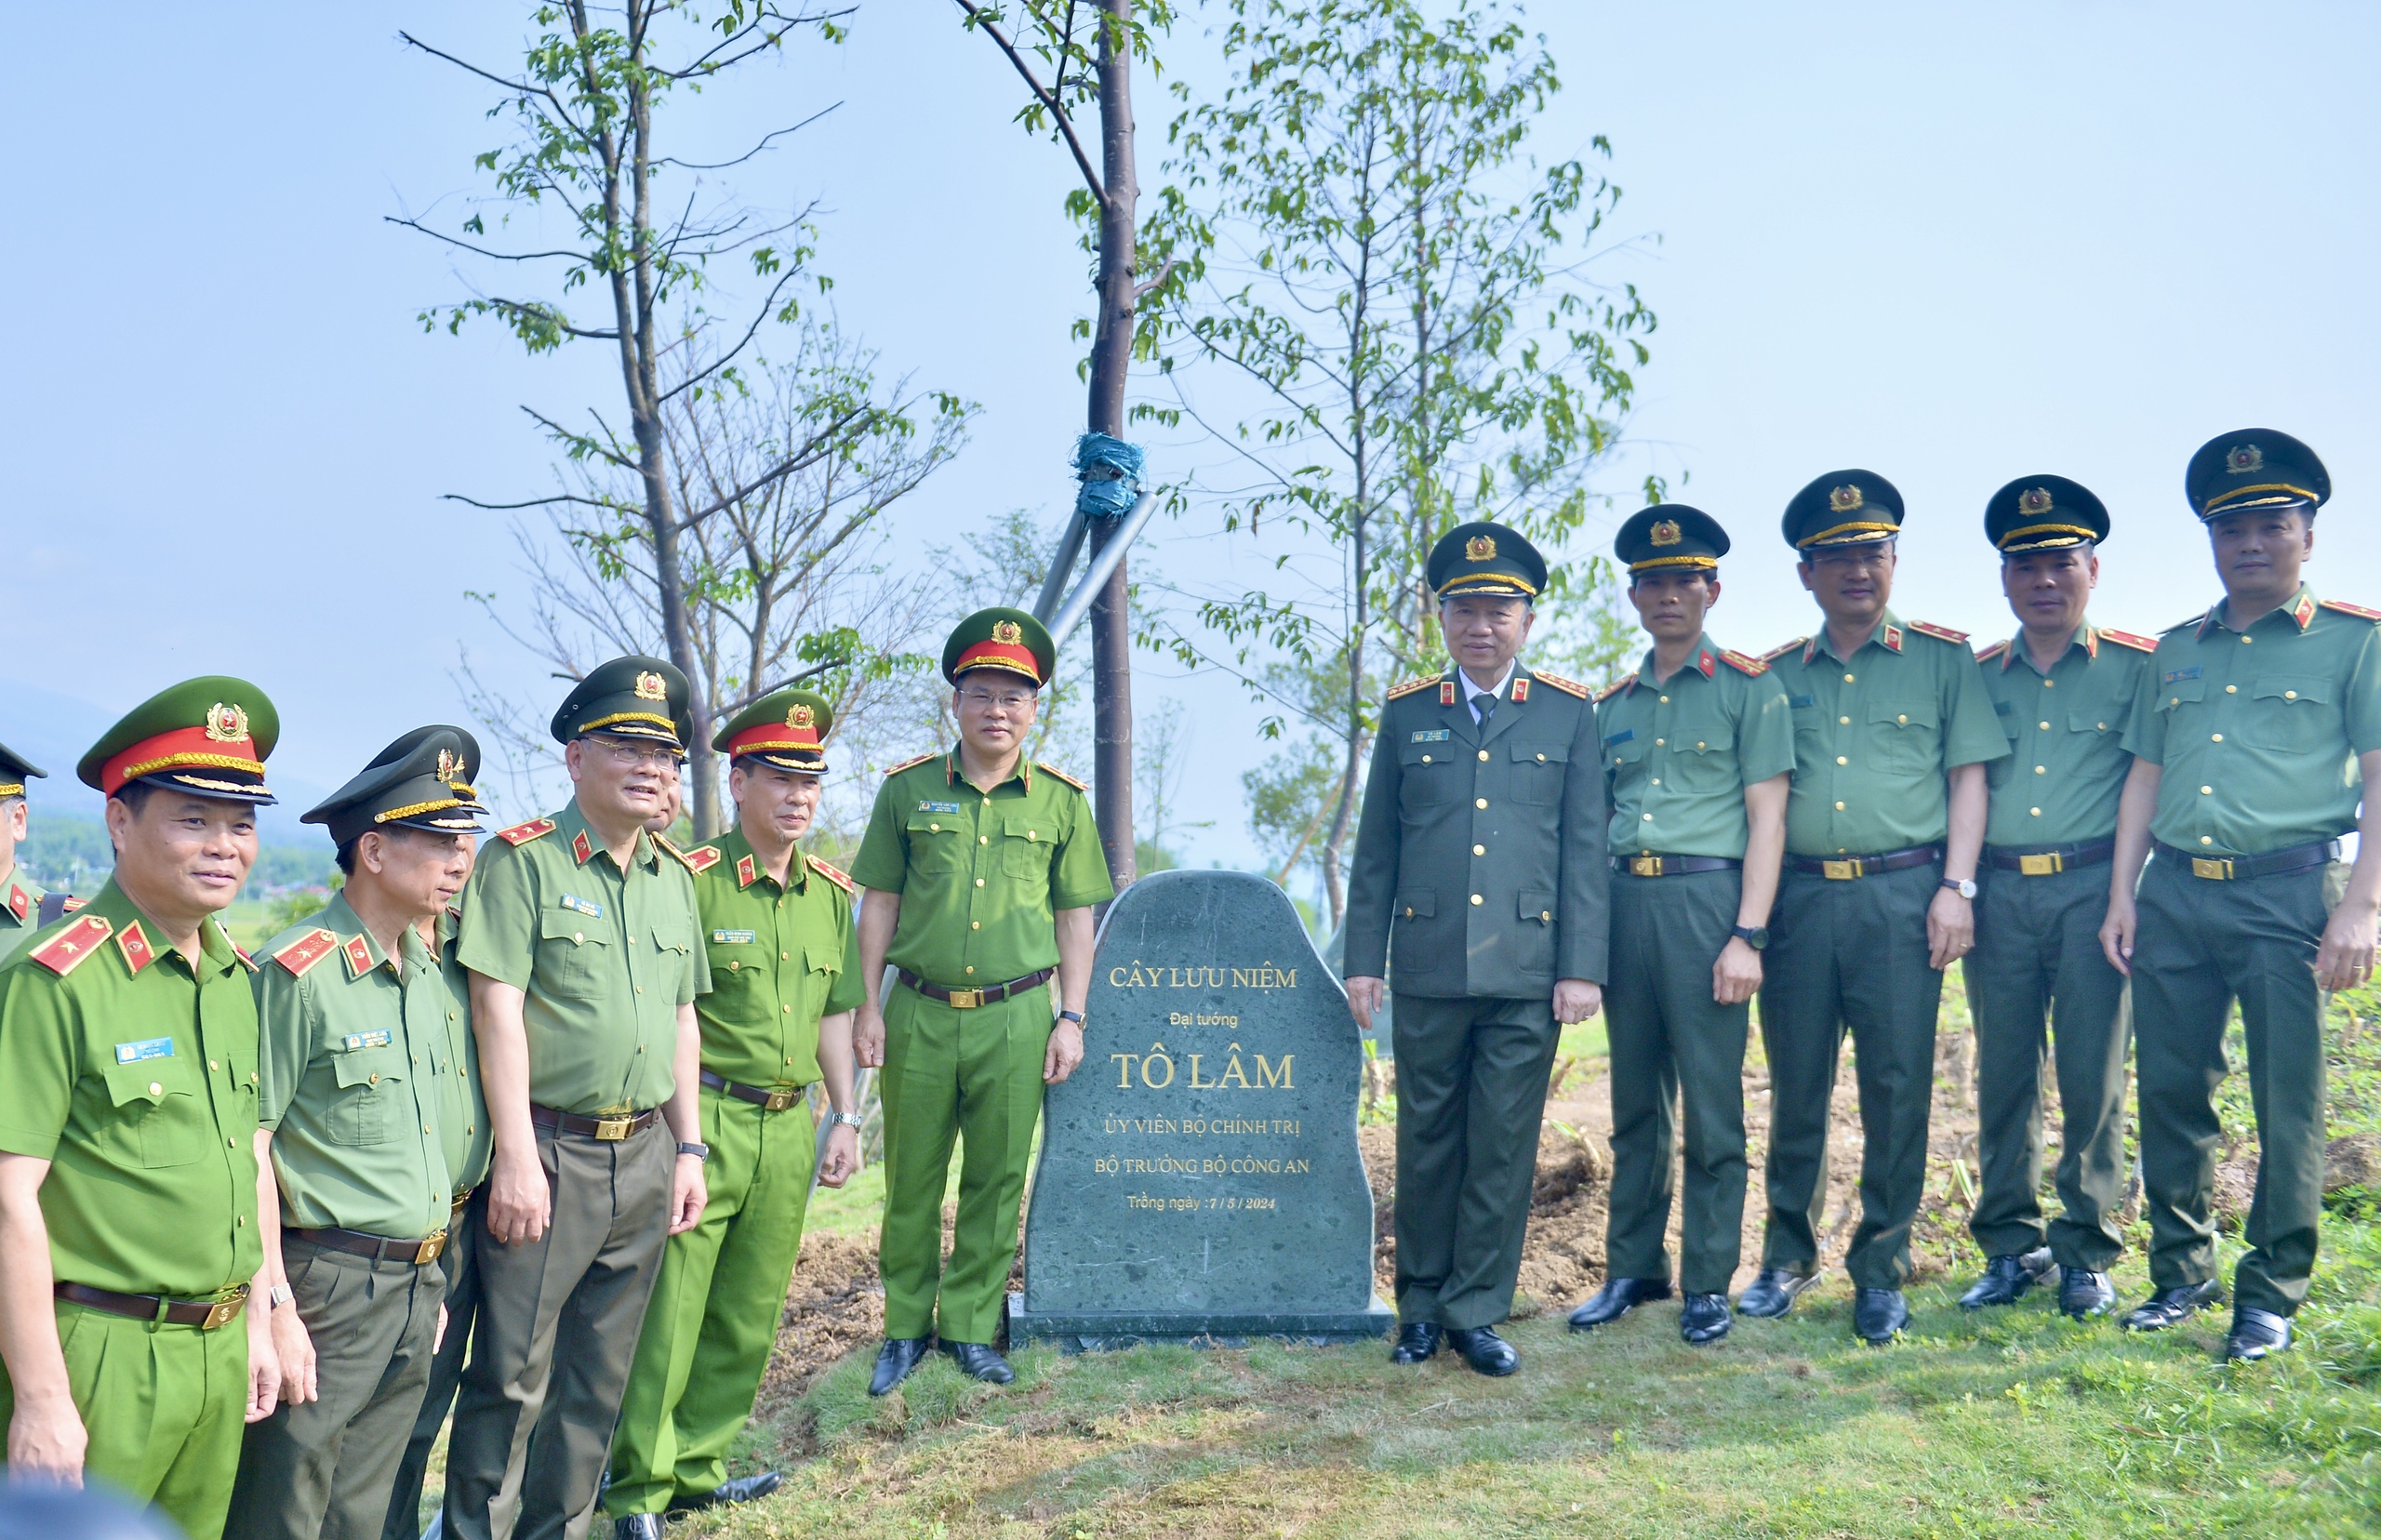 Sau đó, đại tướng Tô Lâm đã trồng cây lưu niệm tại Đền thờ liệt sĩ Chiến trường Điện Biên Phủ